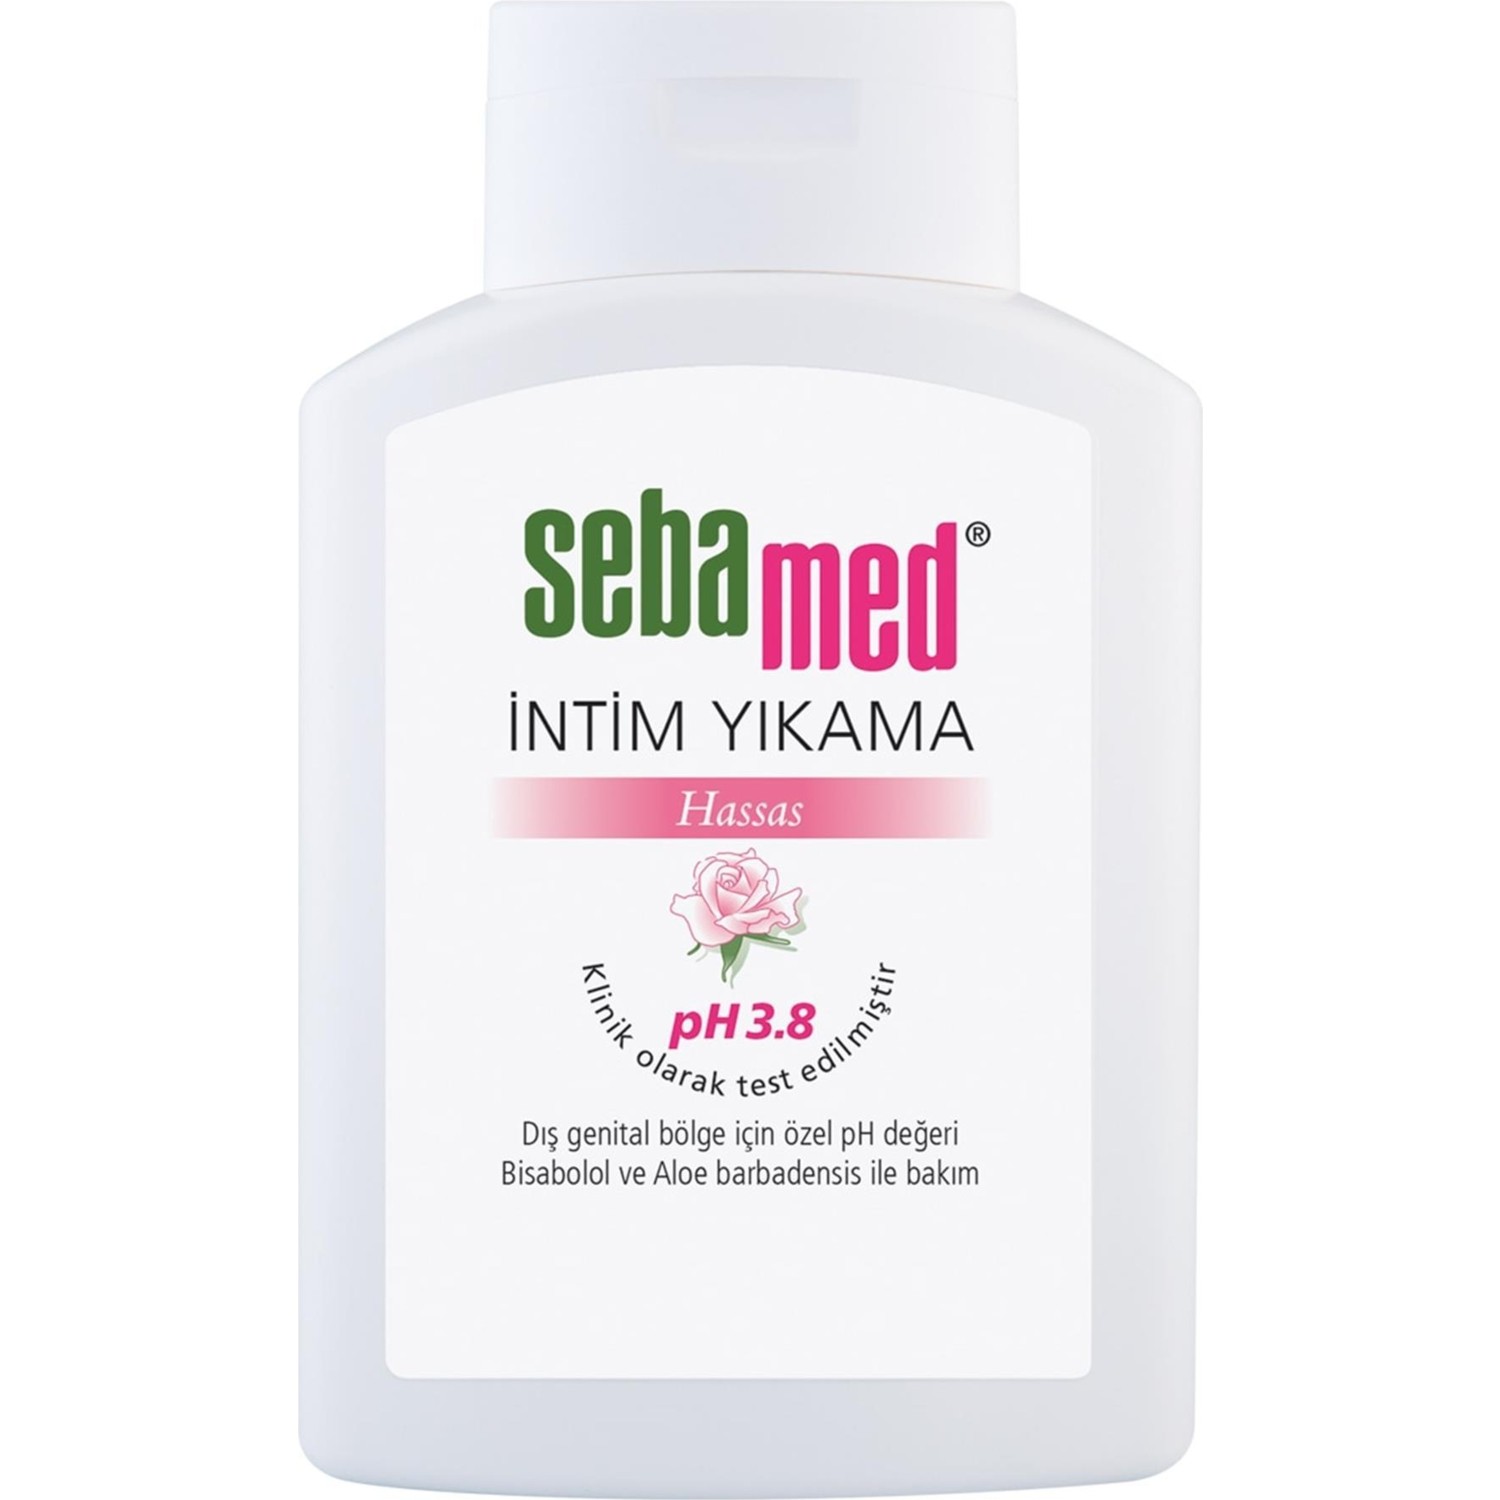 Очищающее средство Sebamed для интимной гигиены, 200 мл очищающее средство sebamed intim liquid для интимной гигиены